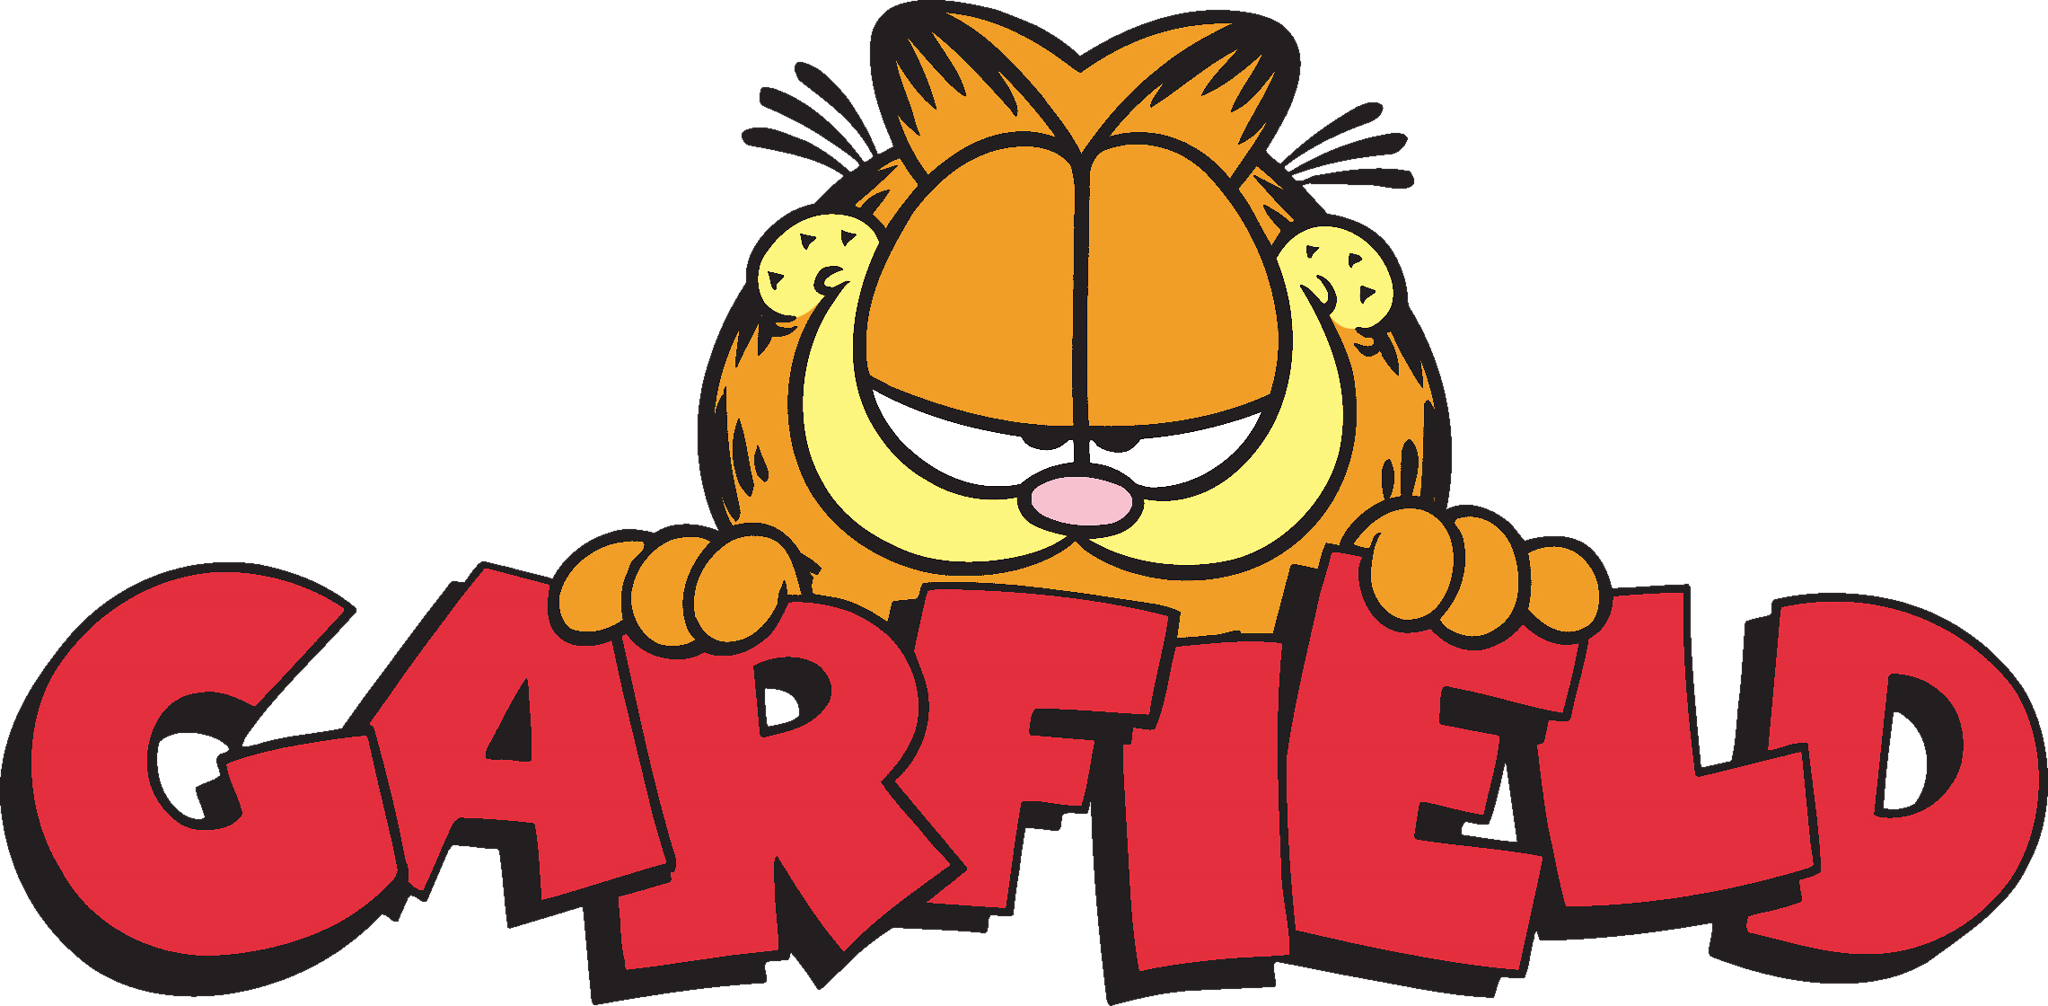 Fat Lasagna Cat That Hates Mondayspics That Make You Garfield.tumblr.com